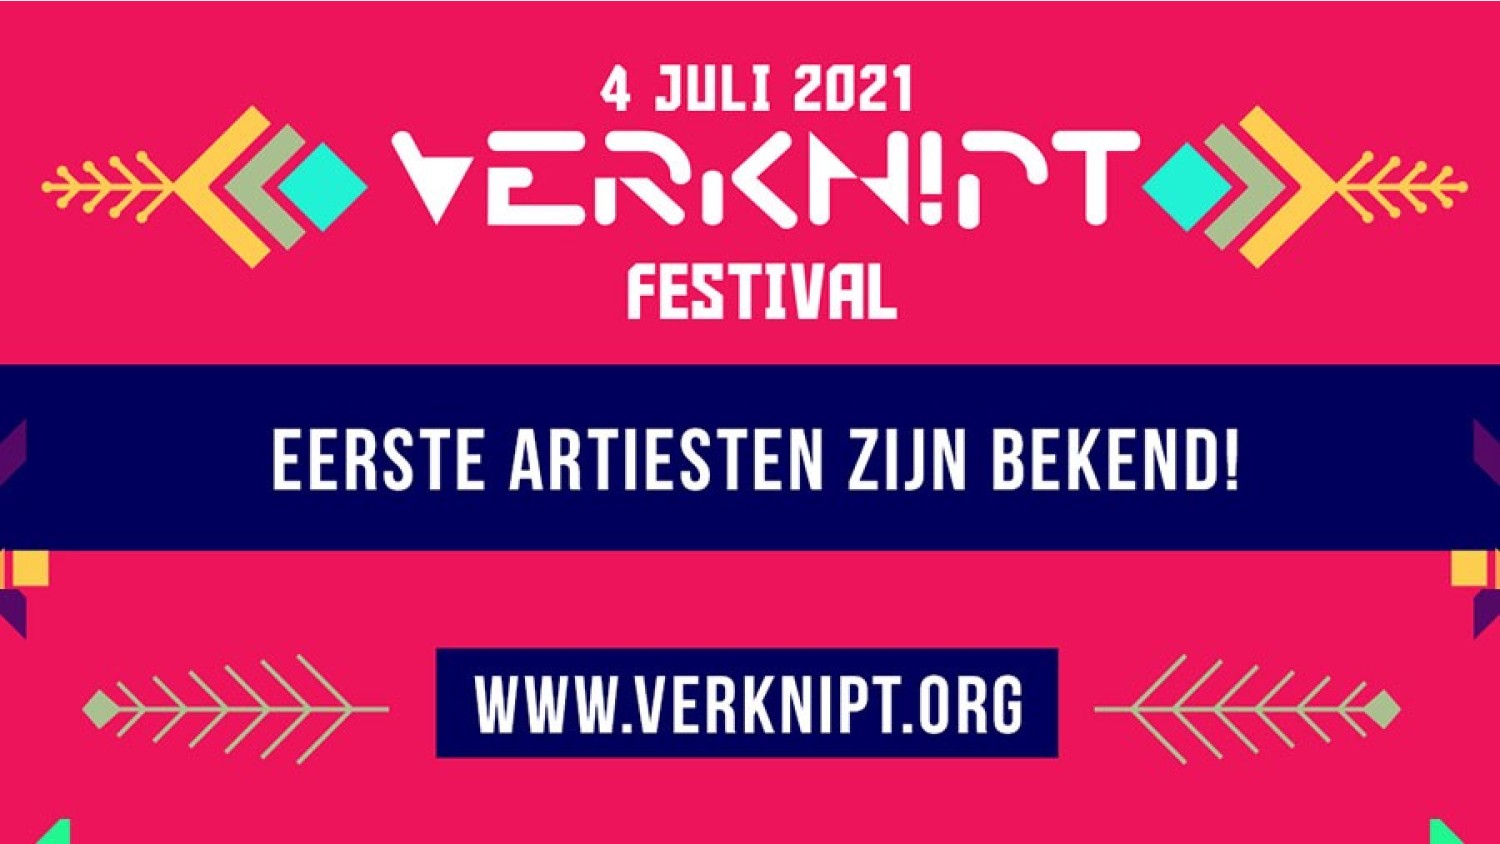 Party nieuws: Eerste namen bekend Verknipt festival 4 juli 2021